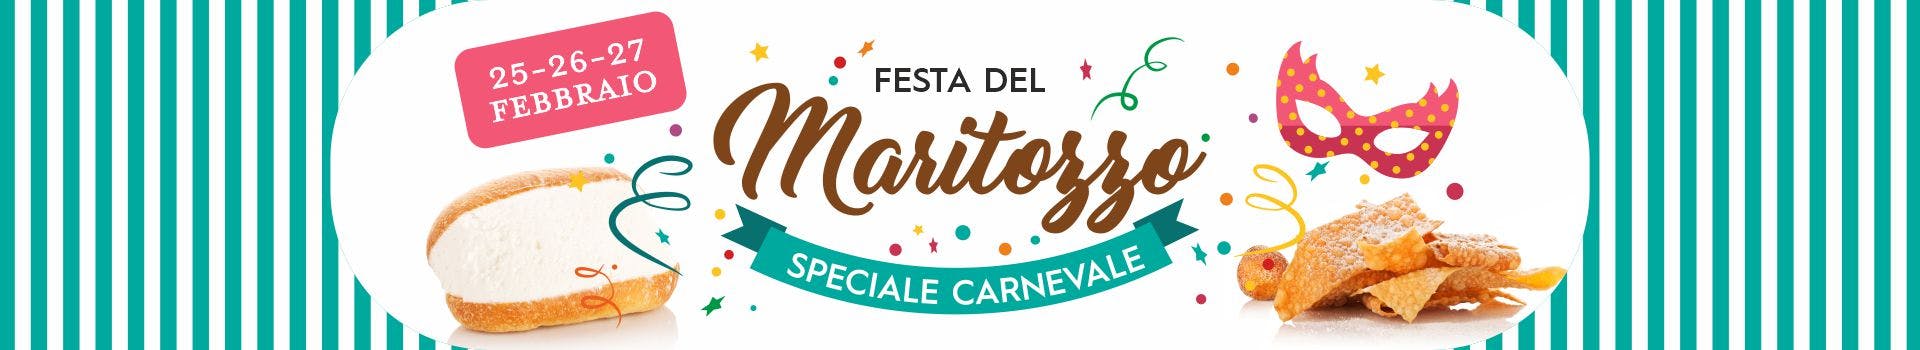 Festa del Maritozzo Eataly Roma Carnevale